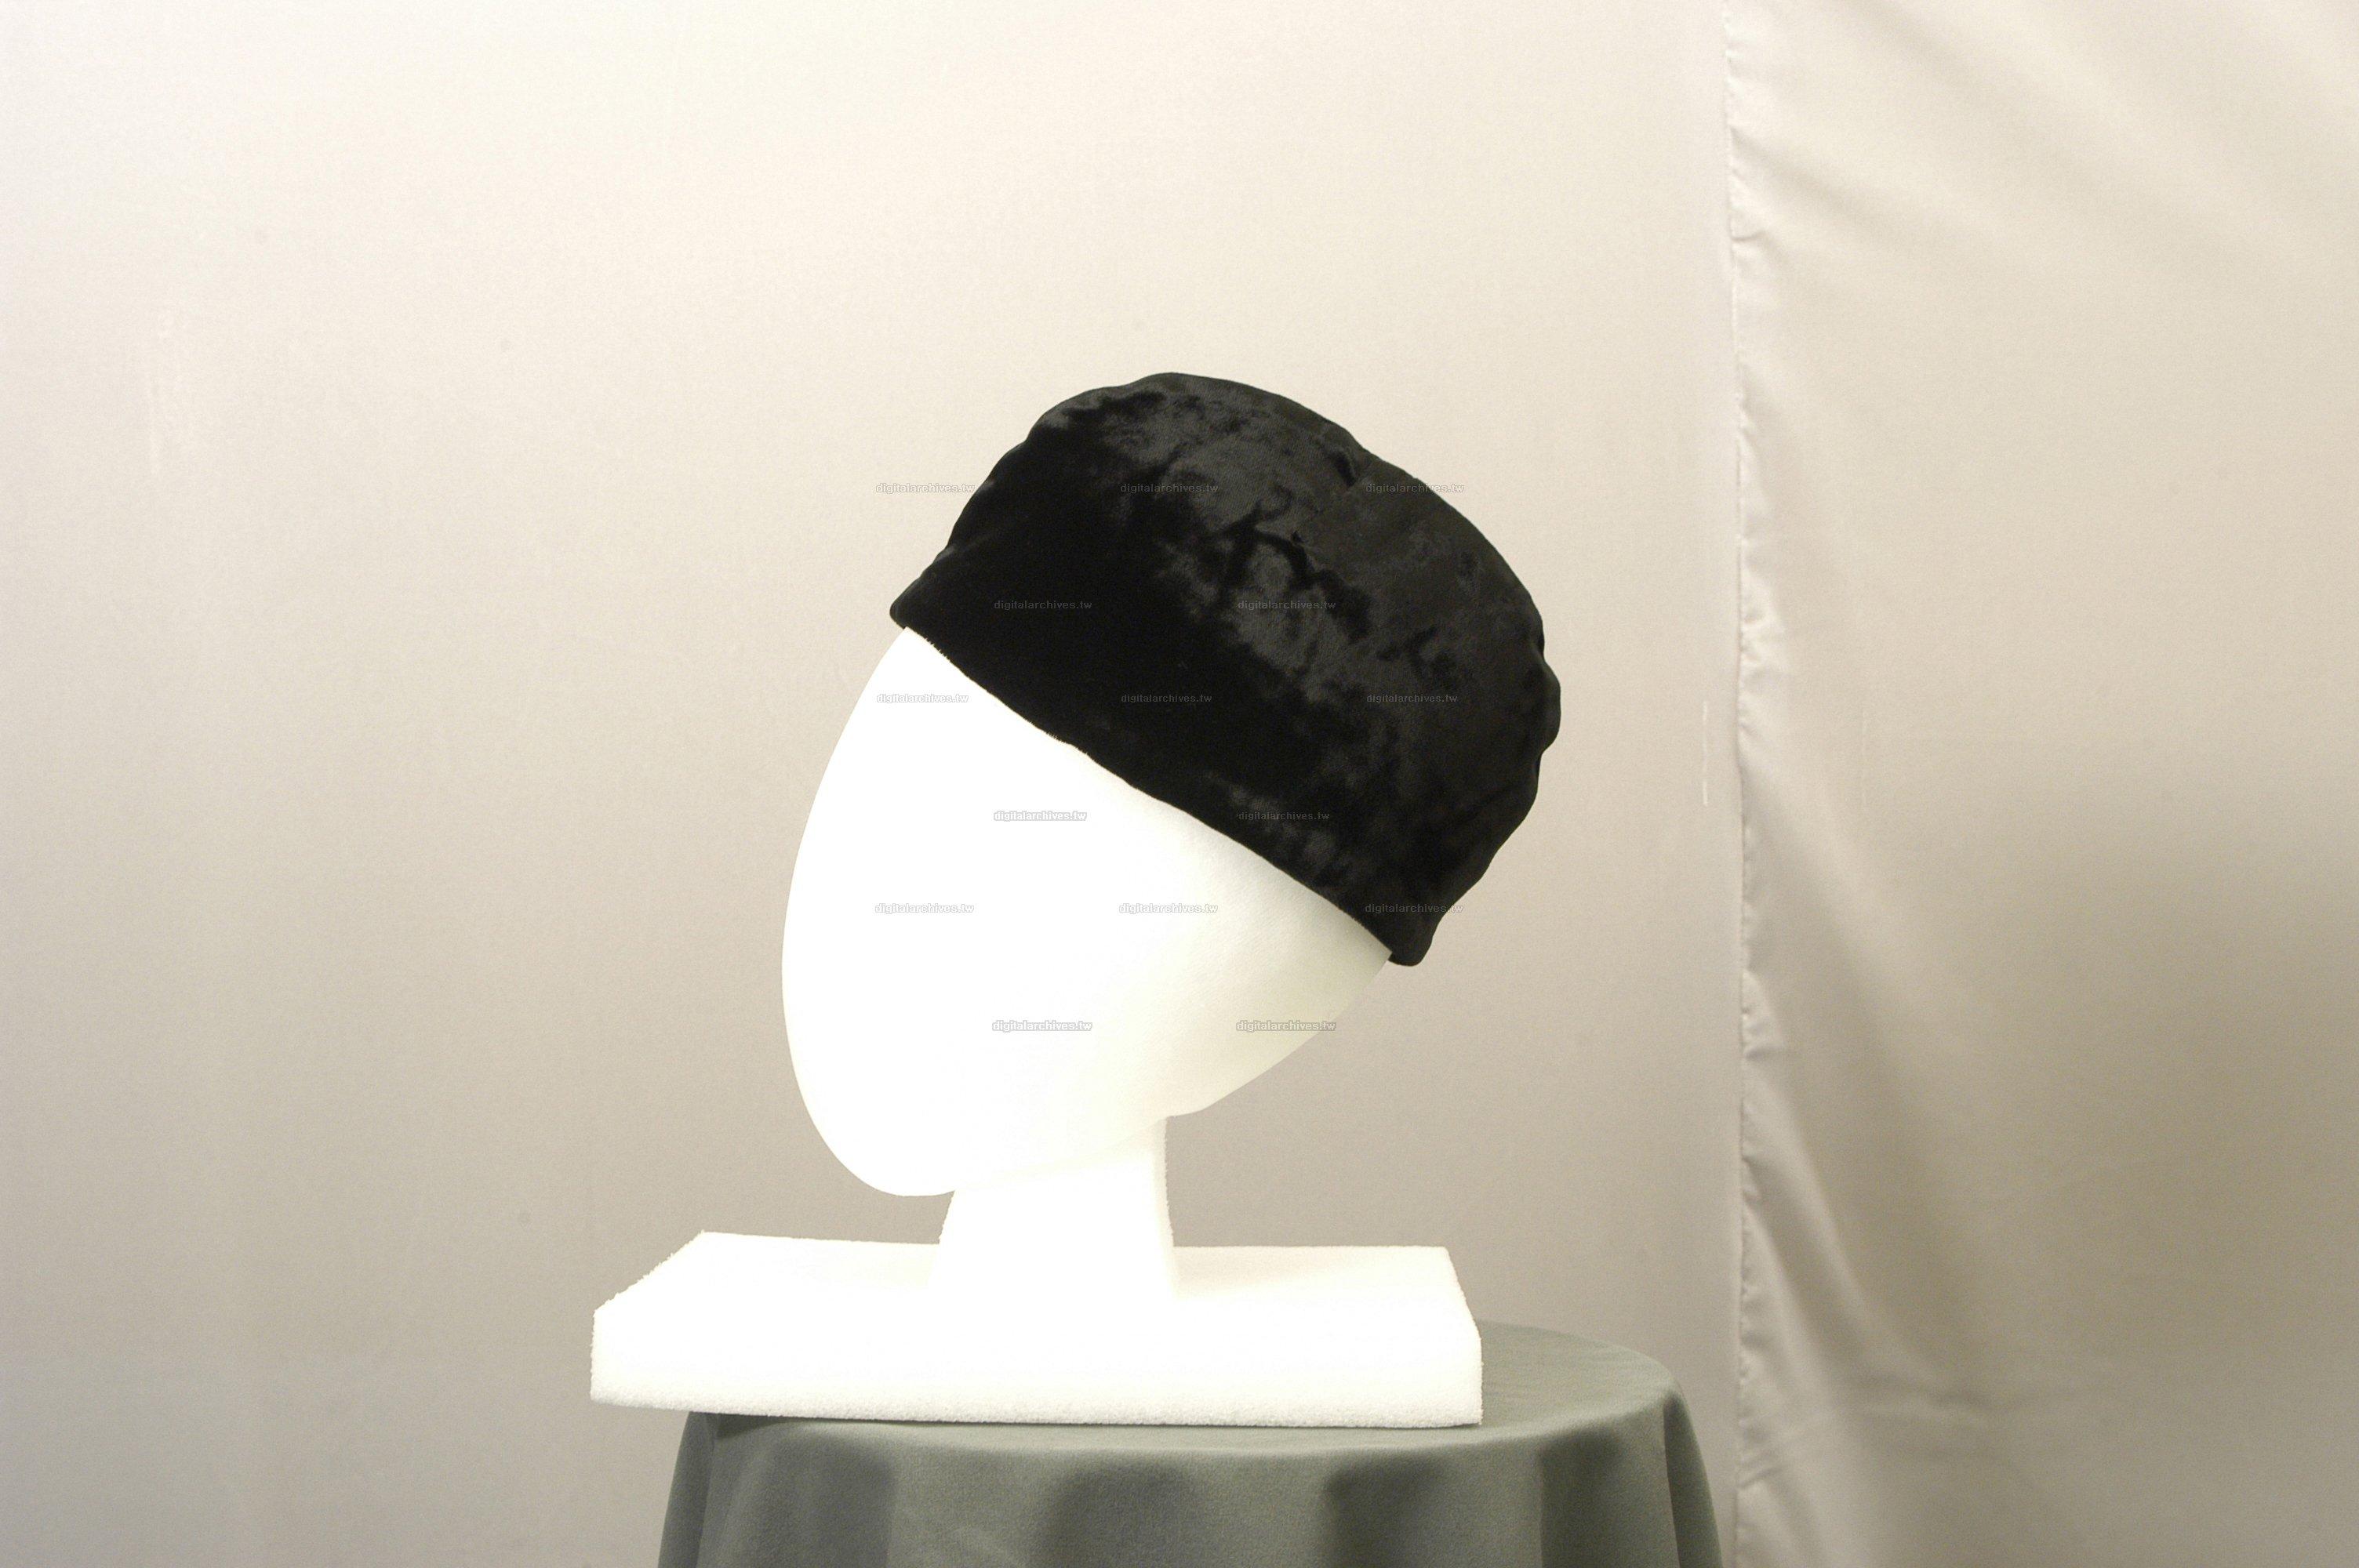 藏品名稱:黑色絨布圓帽(入藏登錄號005000000032C)件名:黑色絨布圓帽